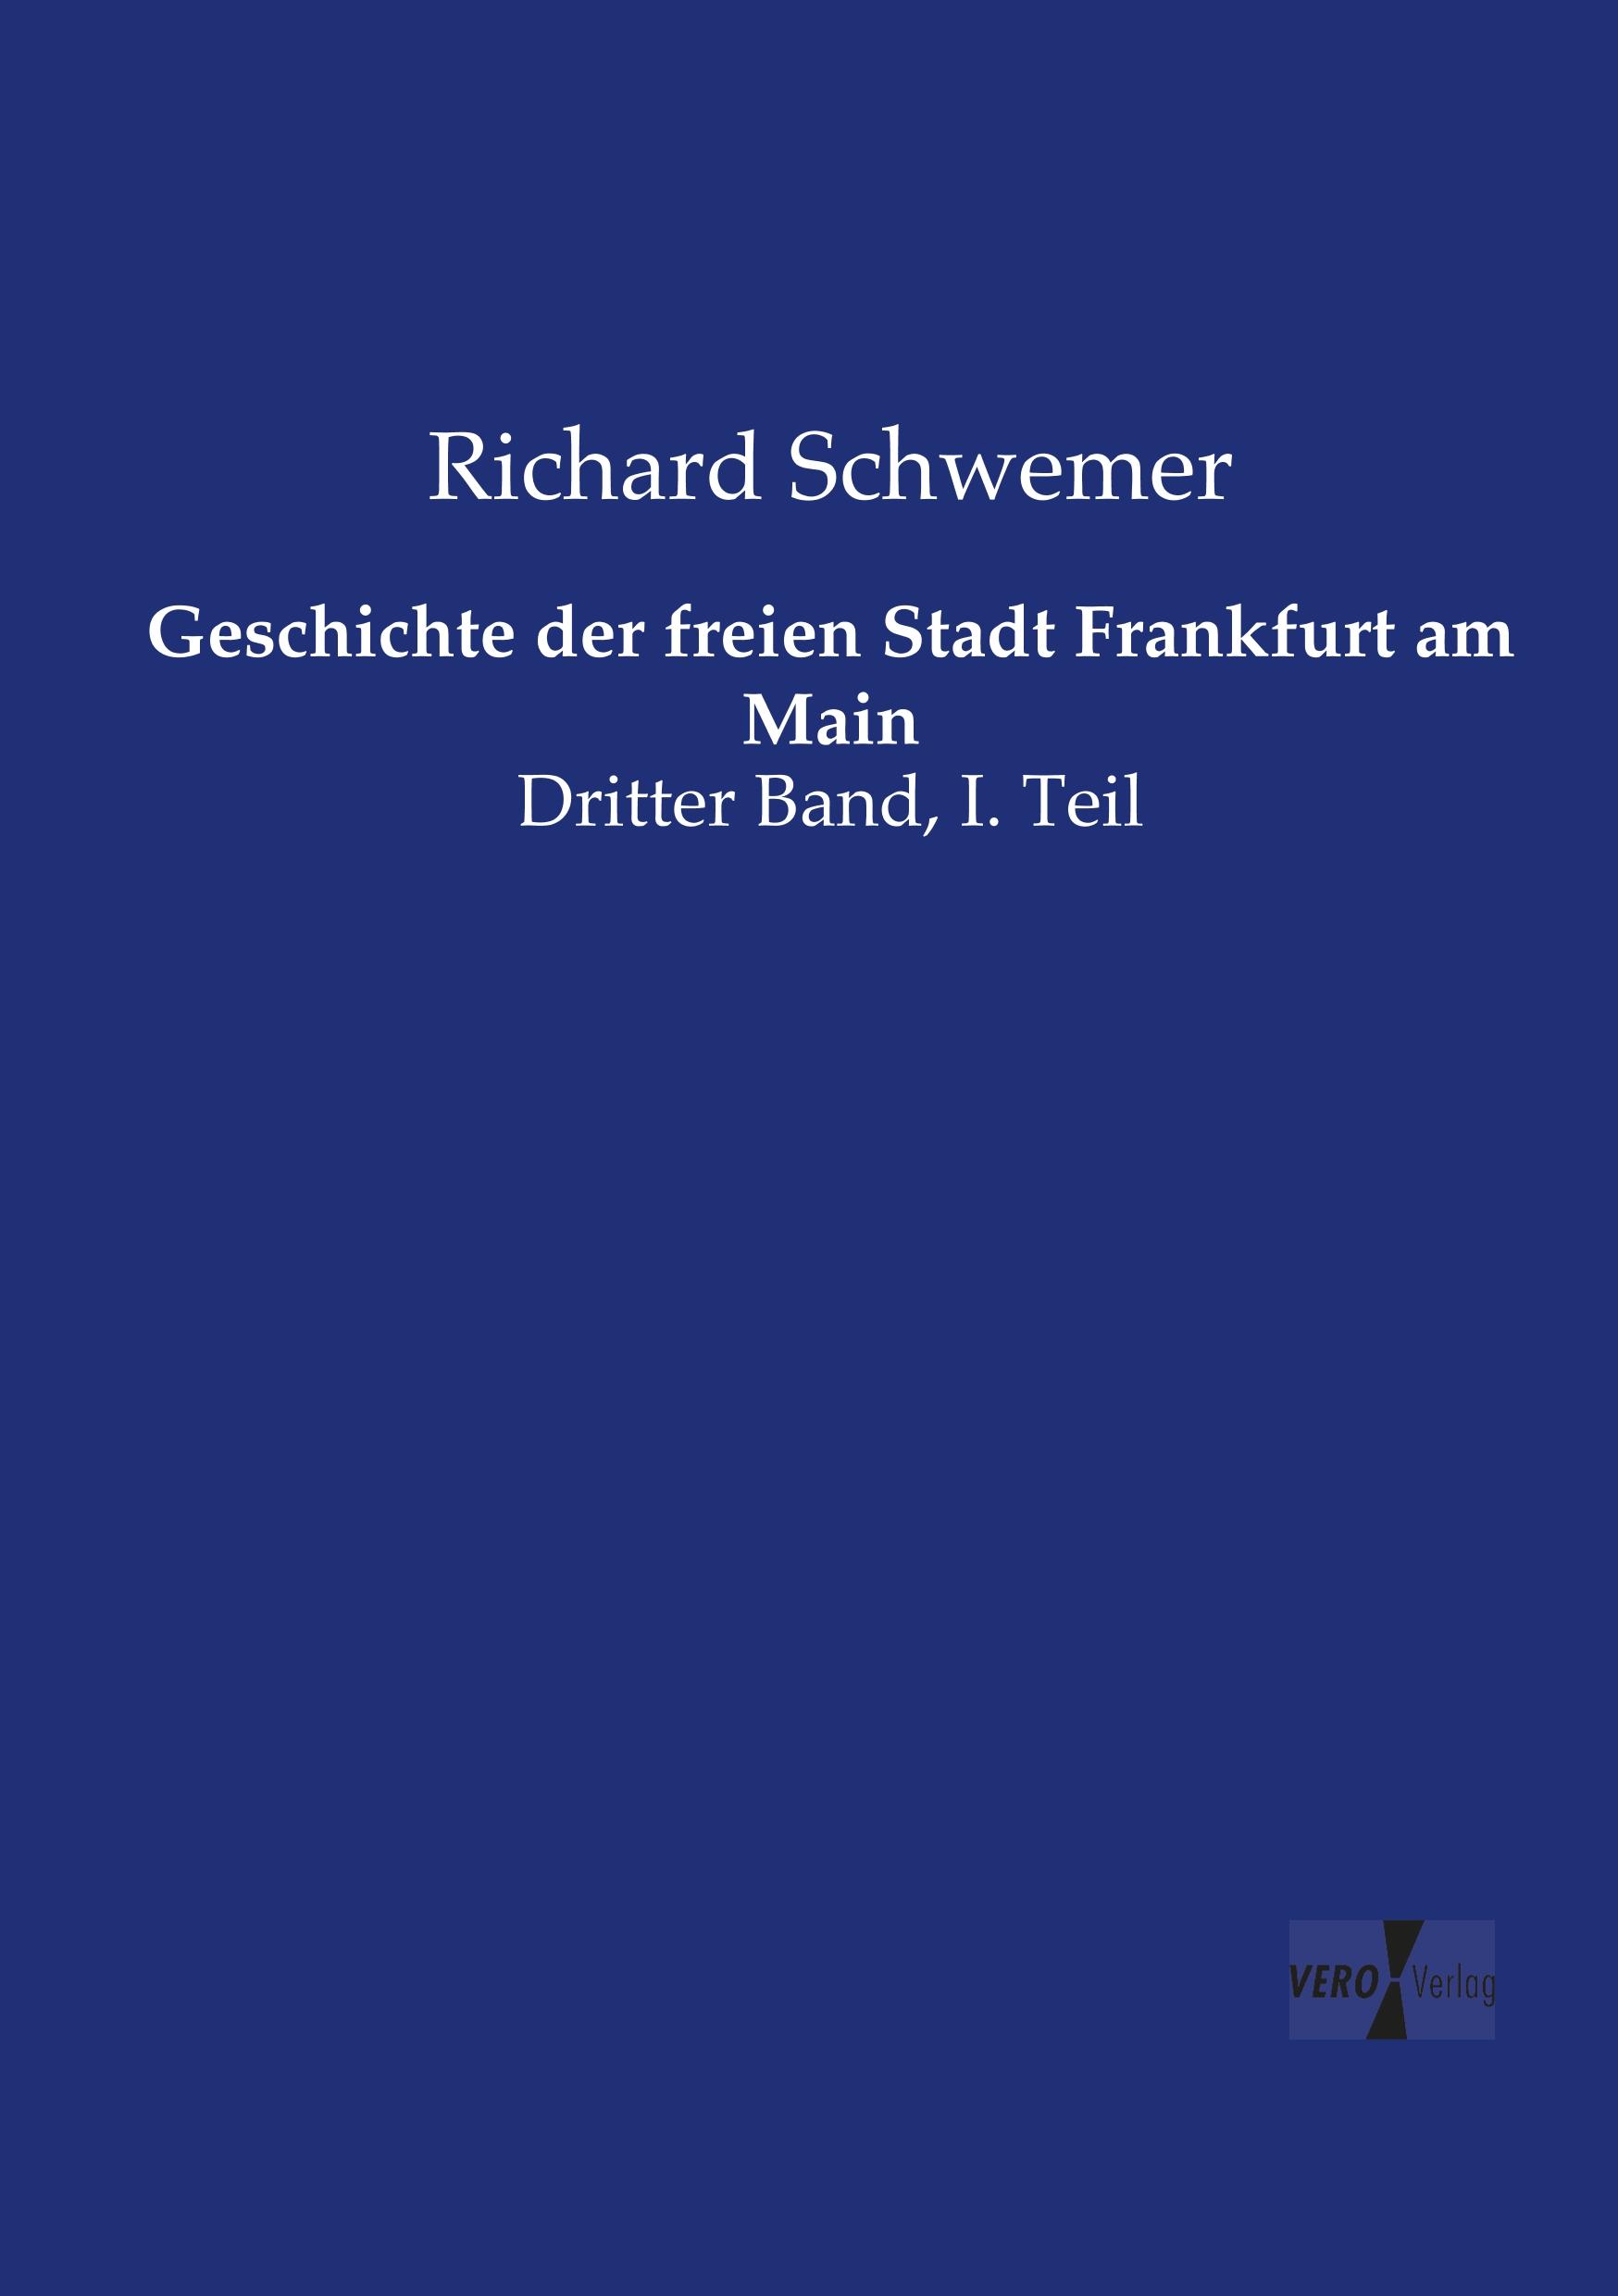 Geschichte der freien Stadt Frankfurt am Main / Dritter Band, I. Teil / Richard Schwemer / Taschenbuch / Paperback / 436 S. / Deutsch / 2019 / Vero Verlag / EAN 9783737226080 - Schwemer, Richard